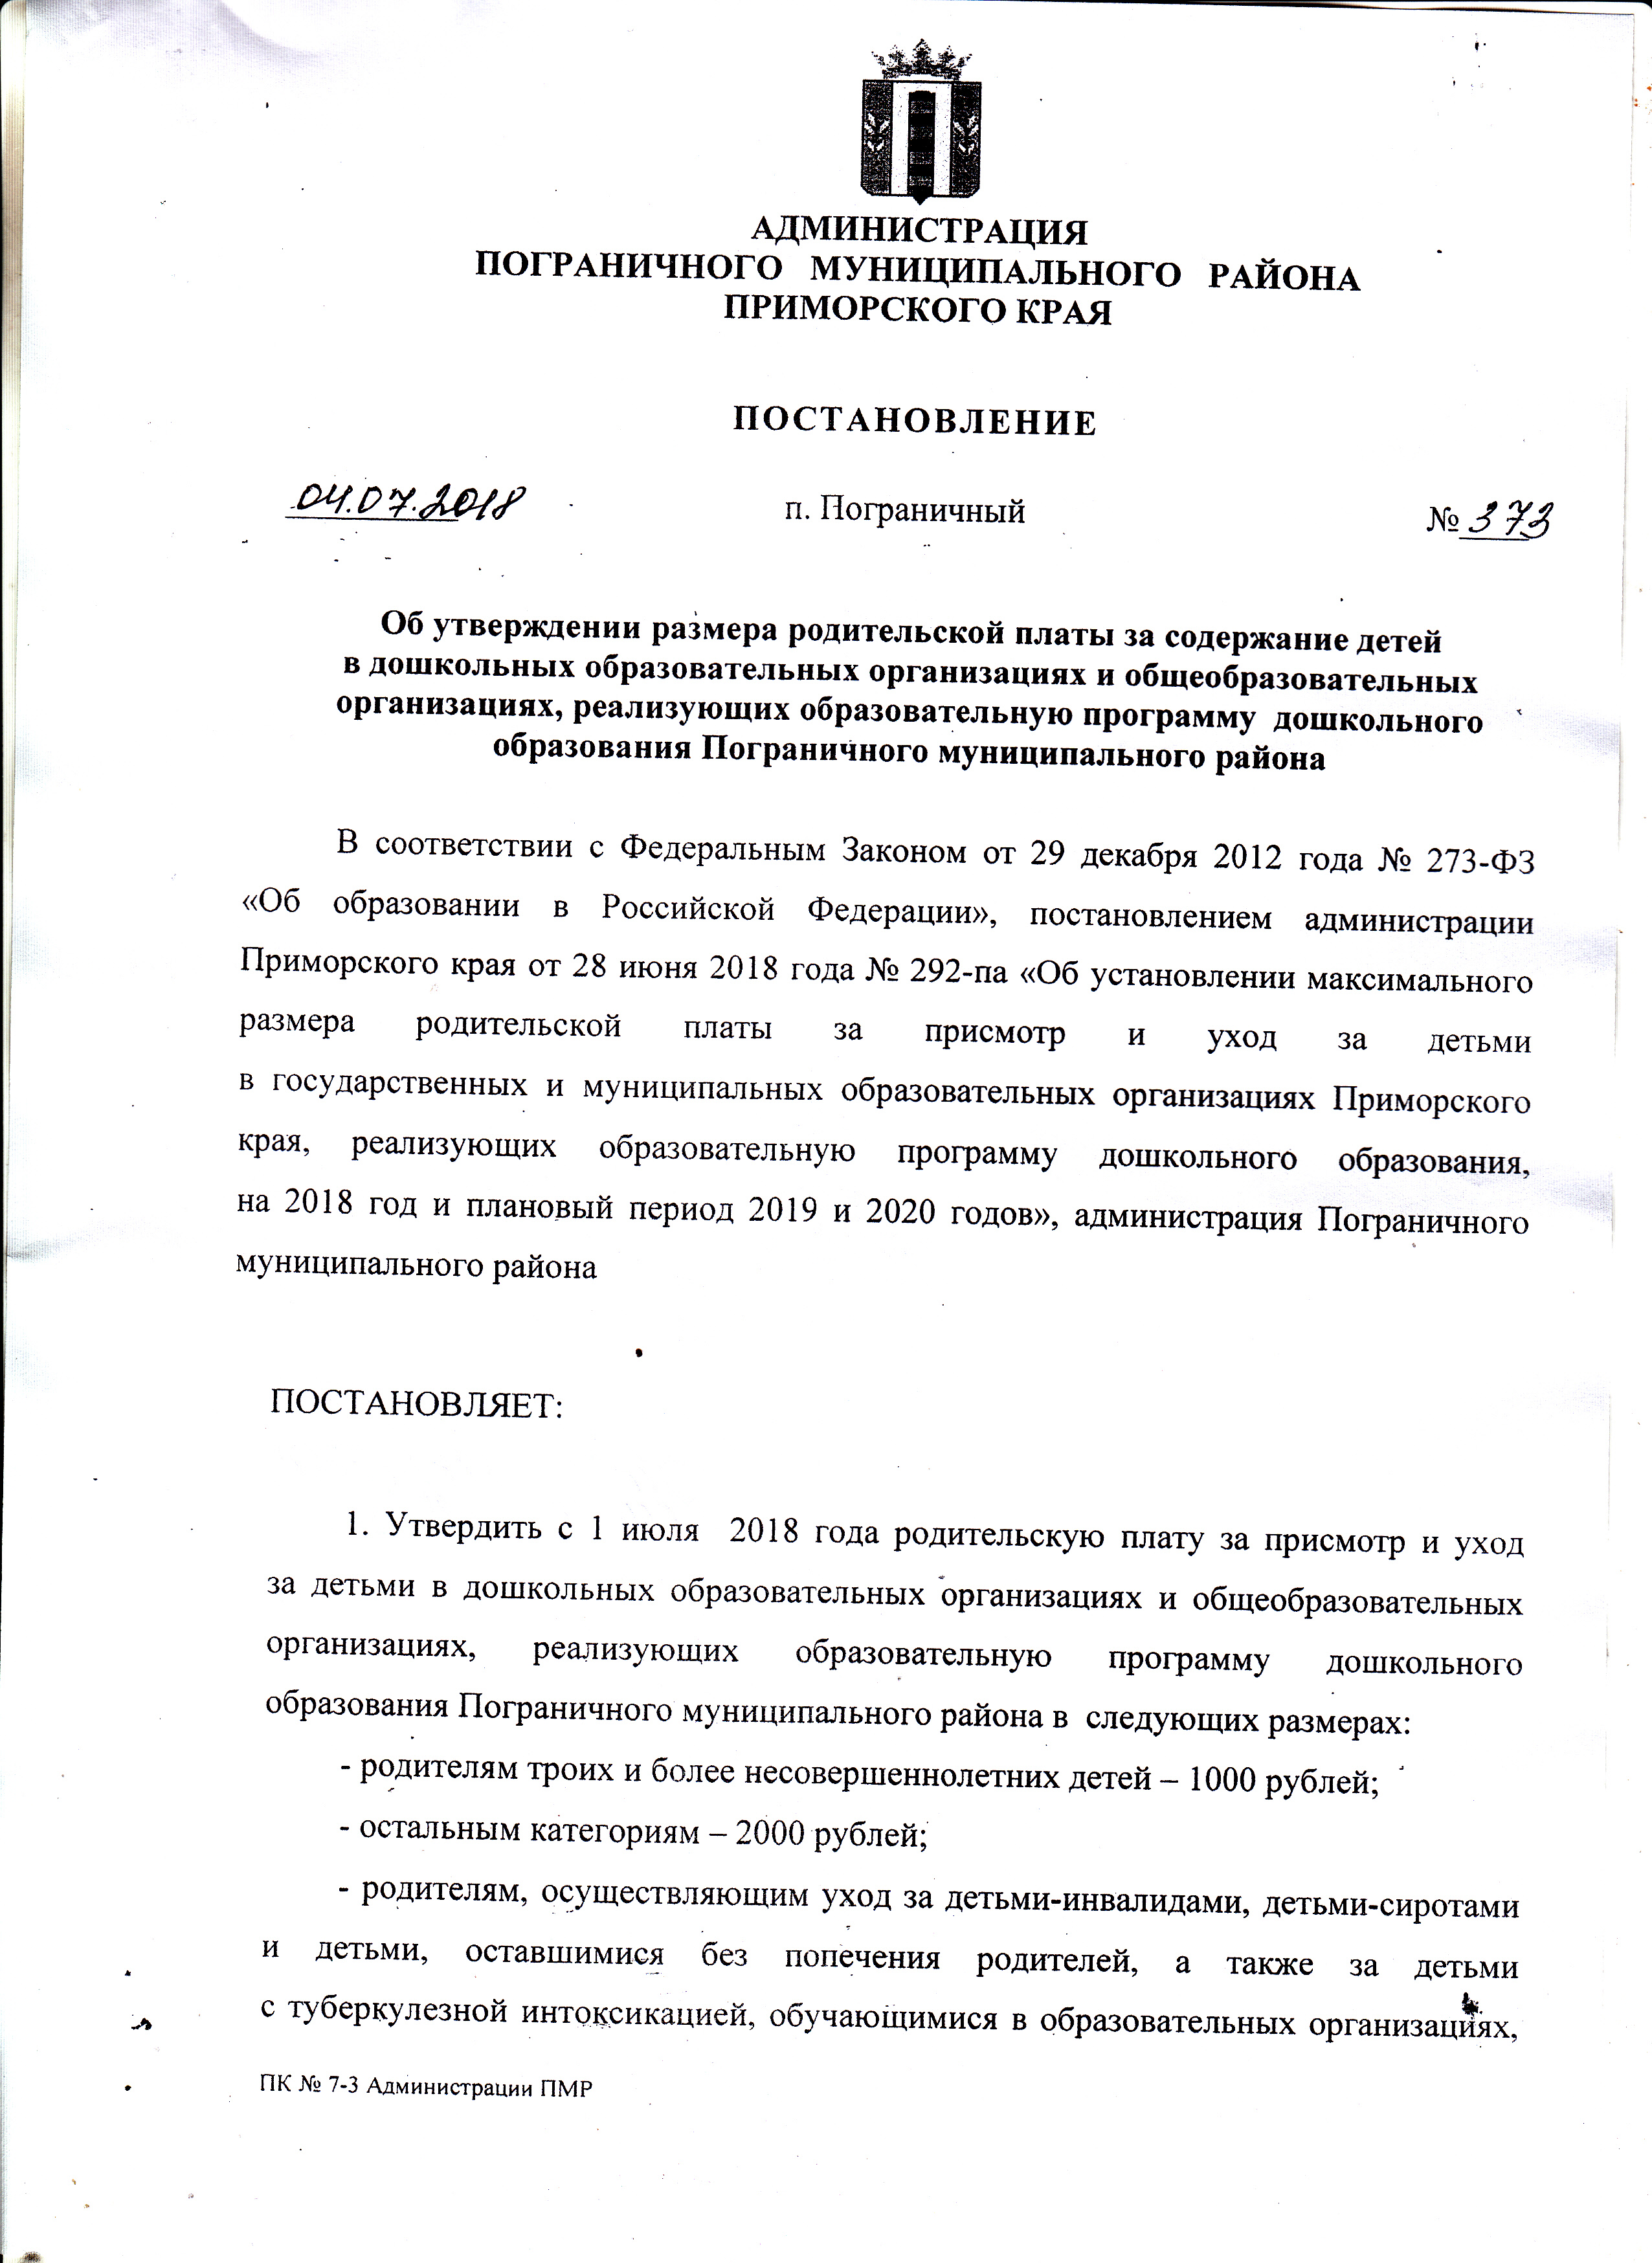 Постановление администрации приморского края